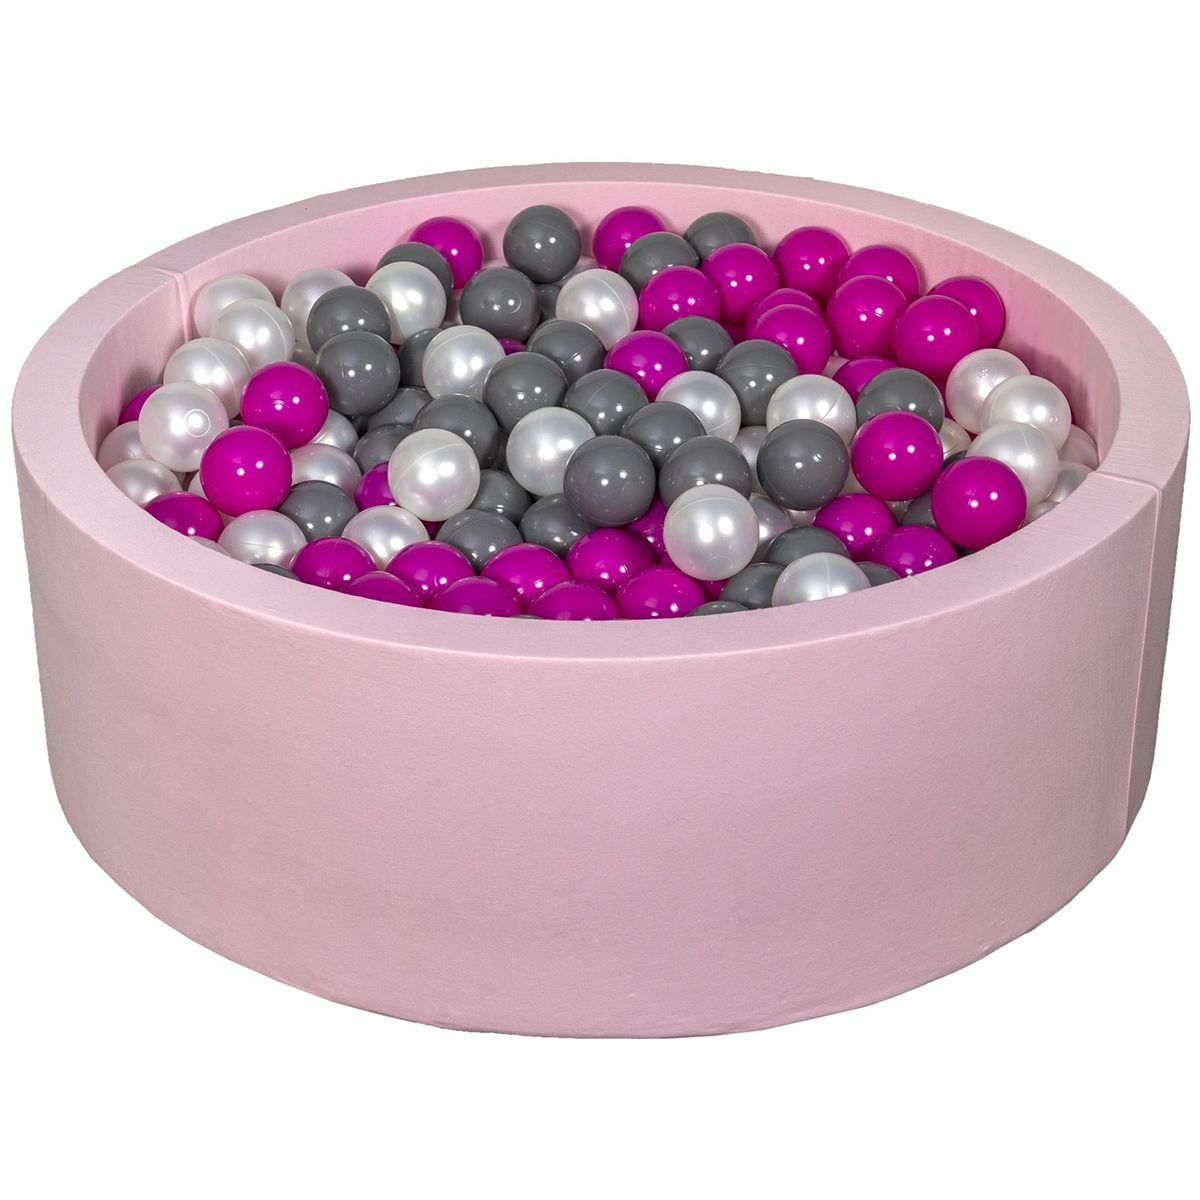  Piscine à balles Aire de jeu + 450 balles rose perle, rose, gris